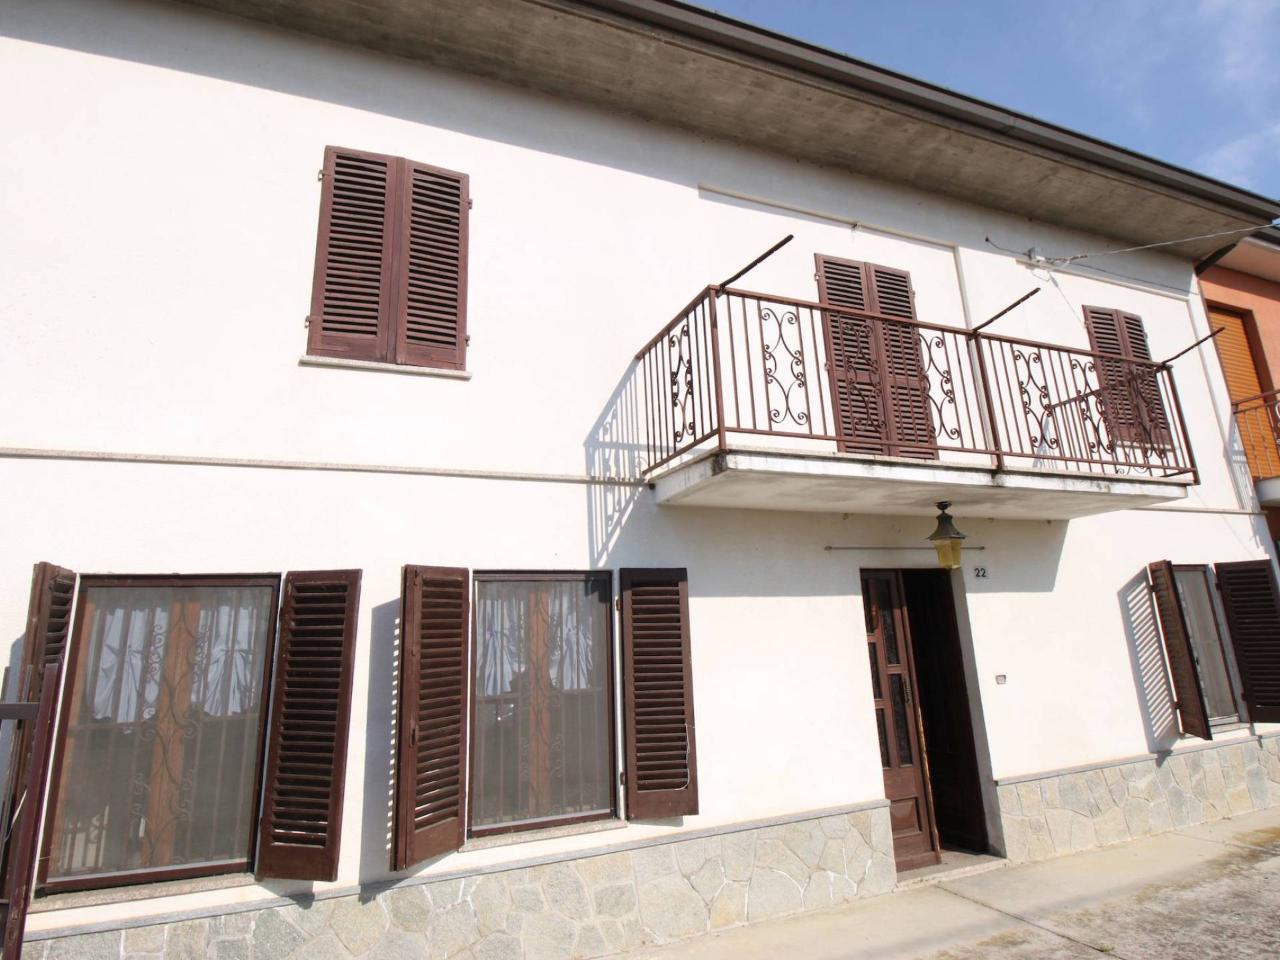 Villa in vendita a Mombercelli